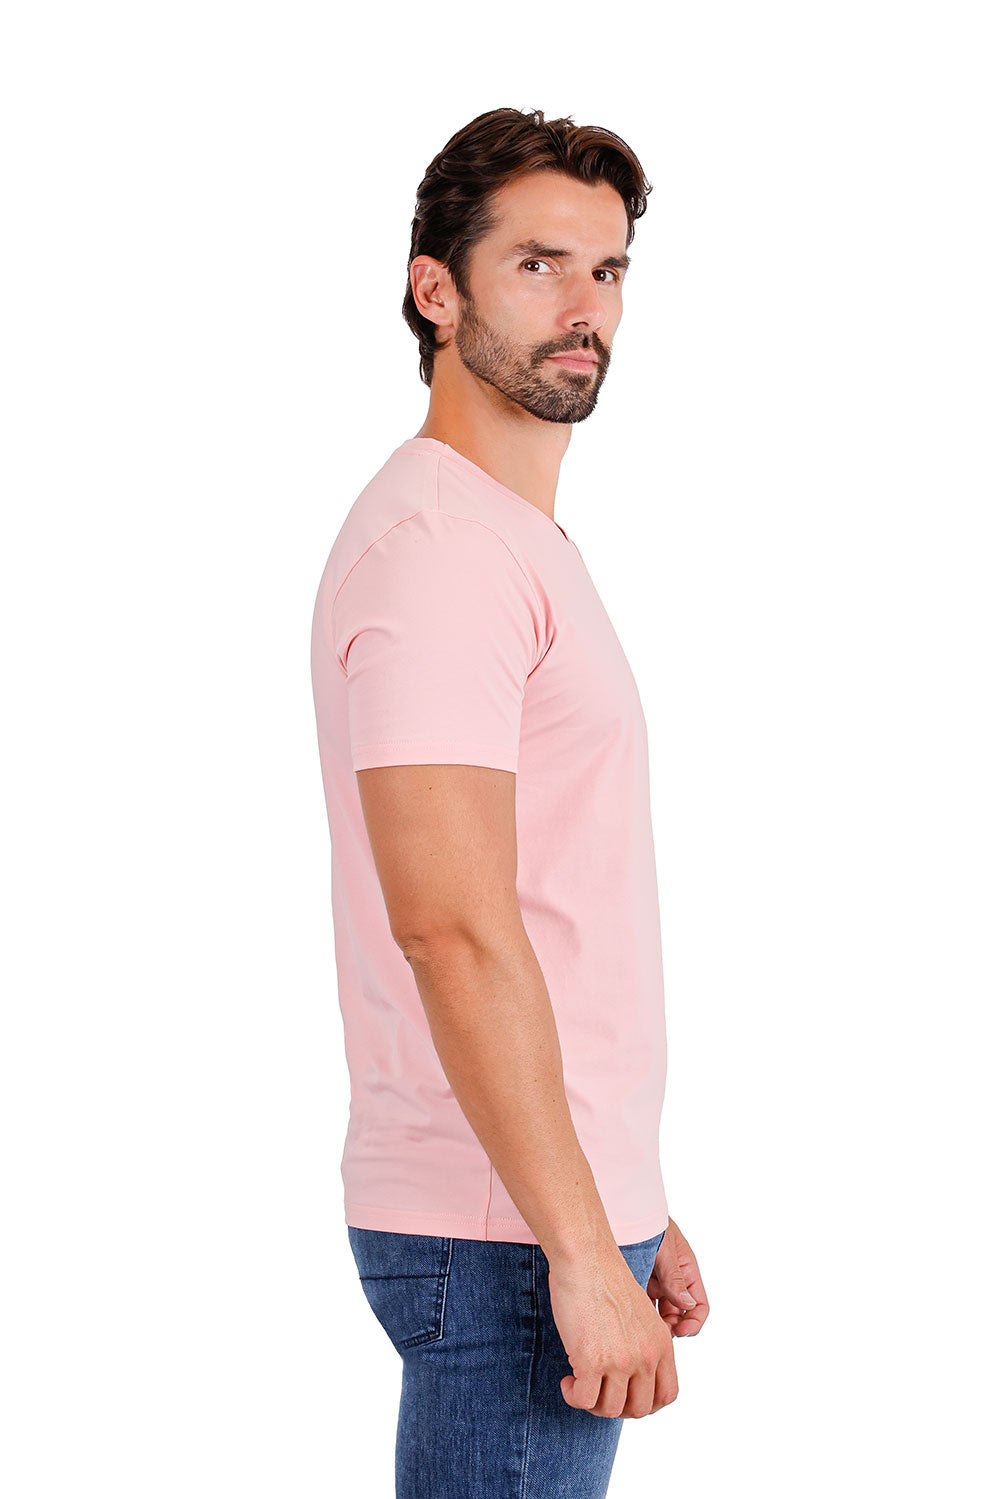 BARABAS Men's Solid Color V-neck T-shirts TV216 Rose